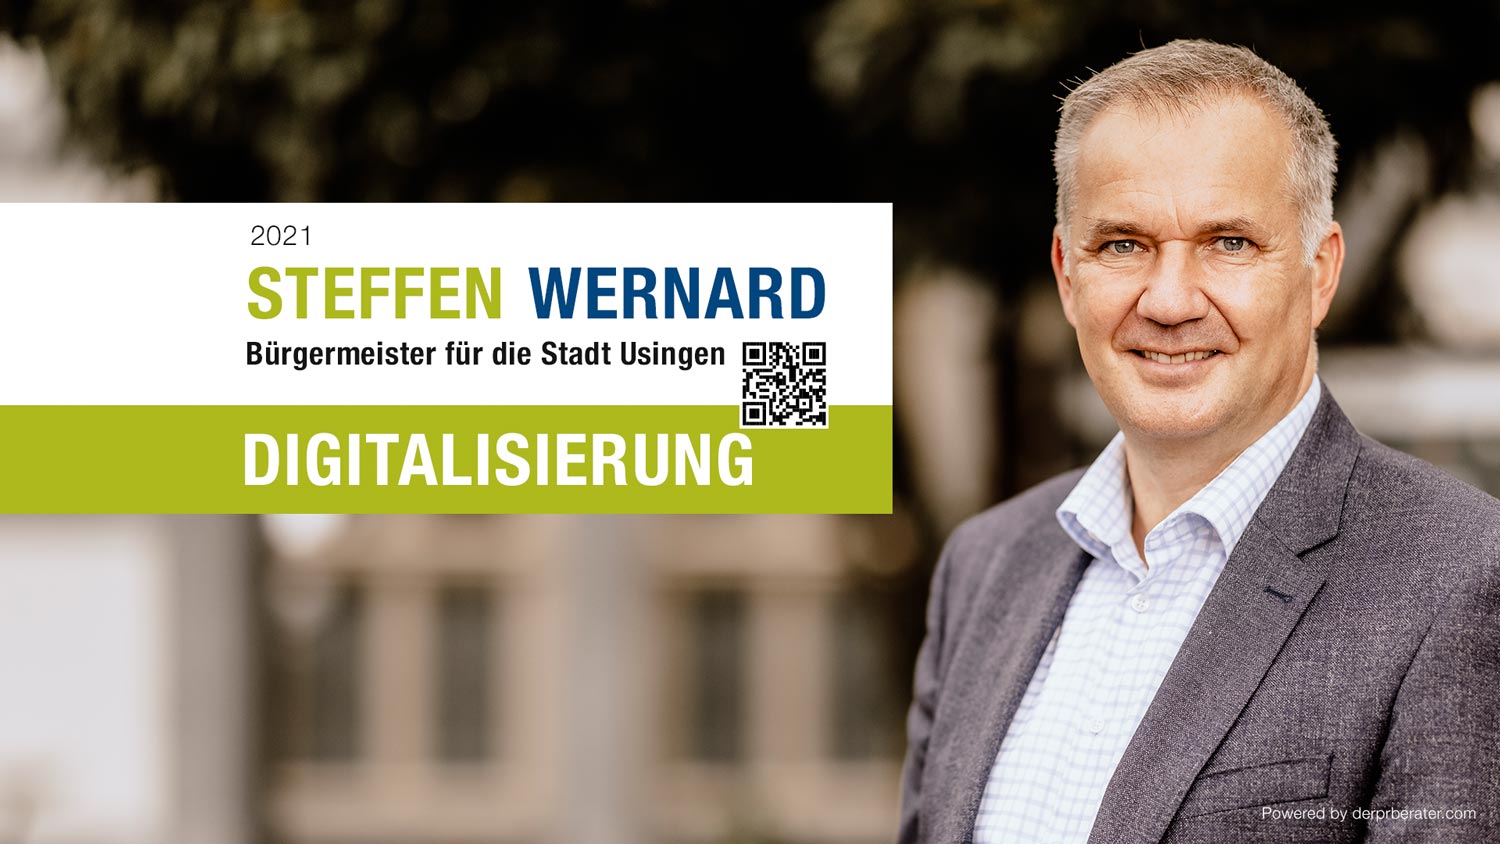 Steffen-Wernard-Projekt-Digitalisierung-Stadt-Usingen